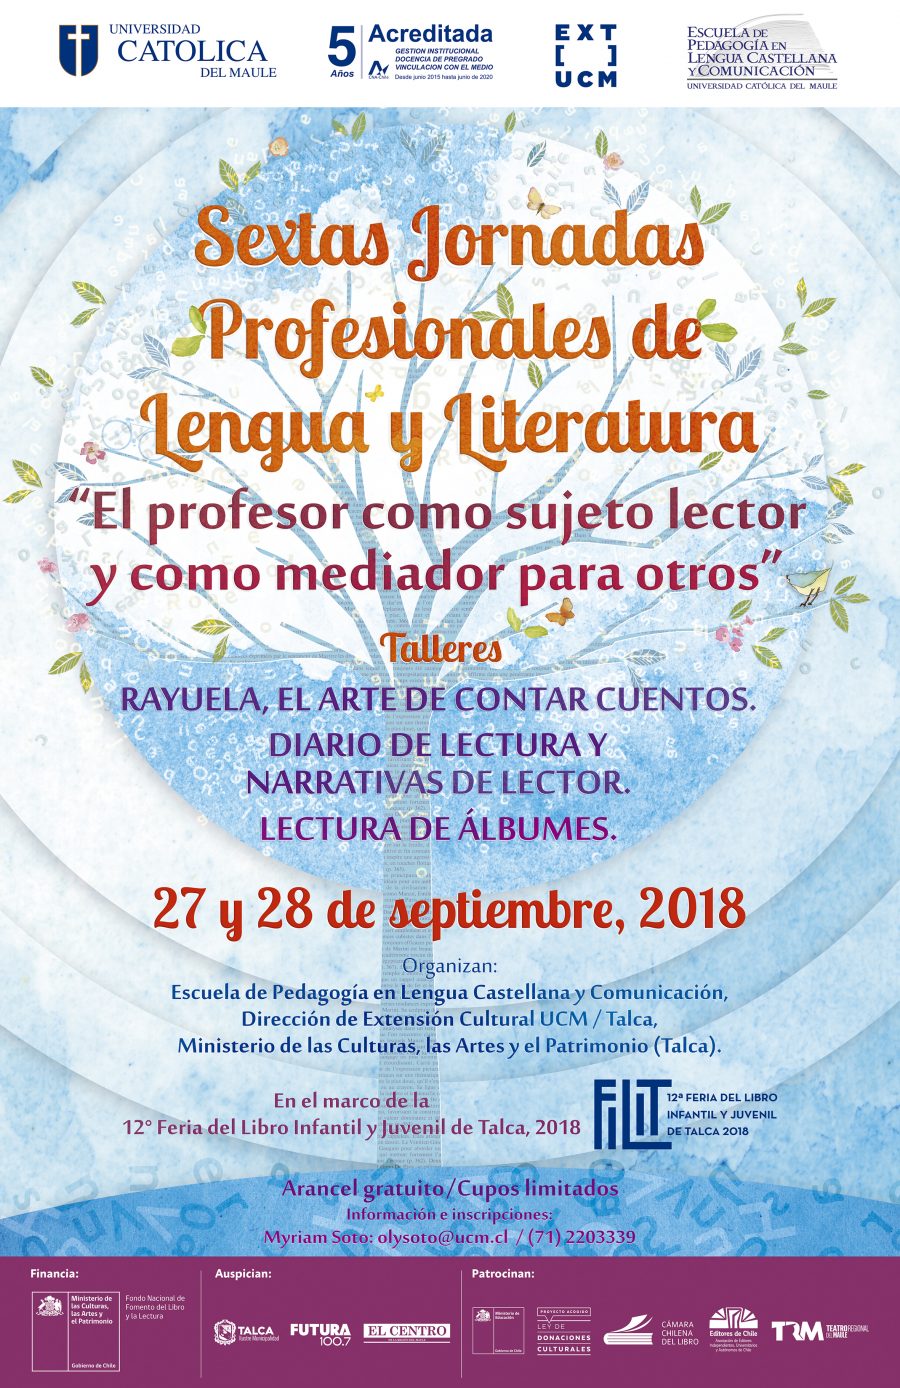 Invitan a Sextas Jornadas Profesionales de Lengua y literatura en FILIT 2018